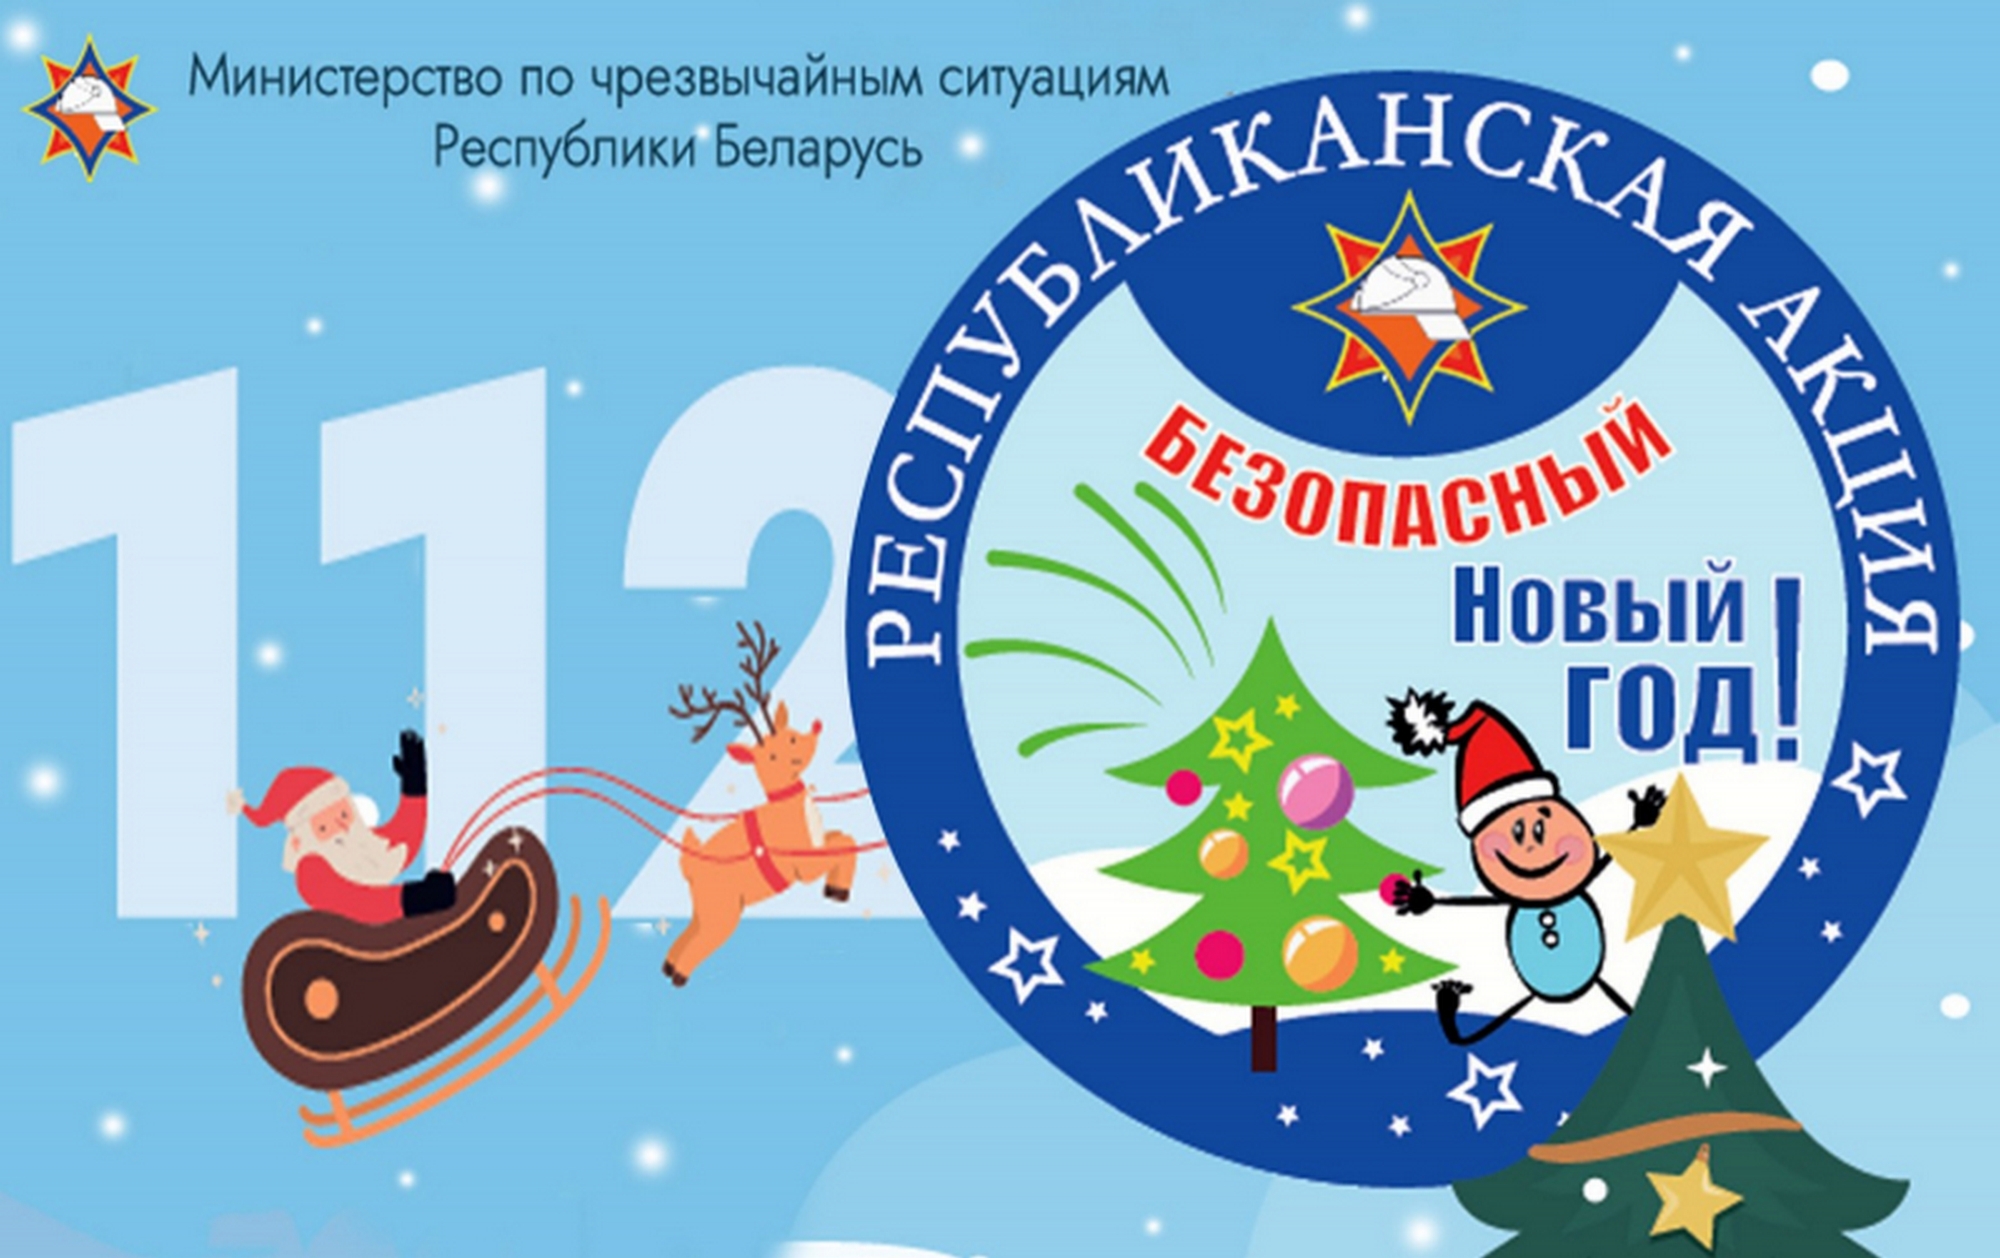 Листовка МЧС РБ "Безопасный новый год"